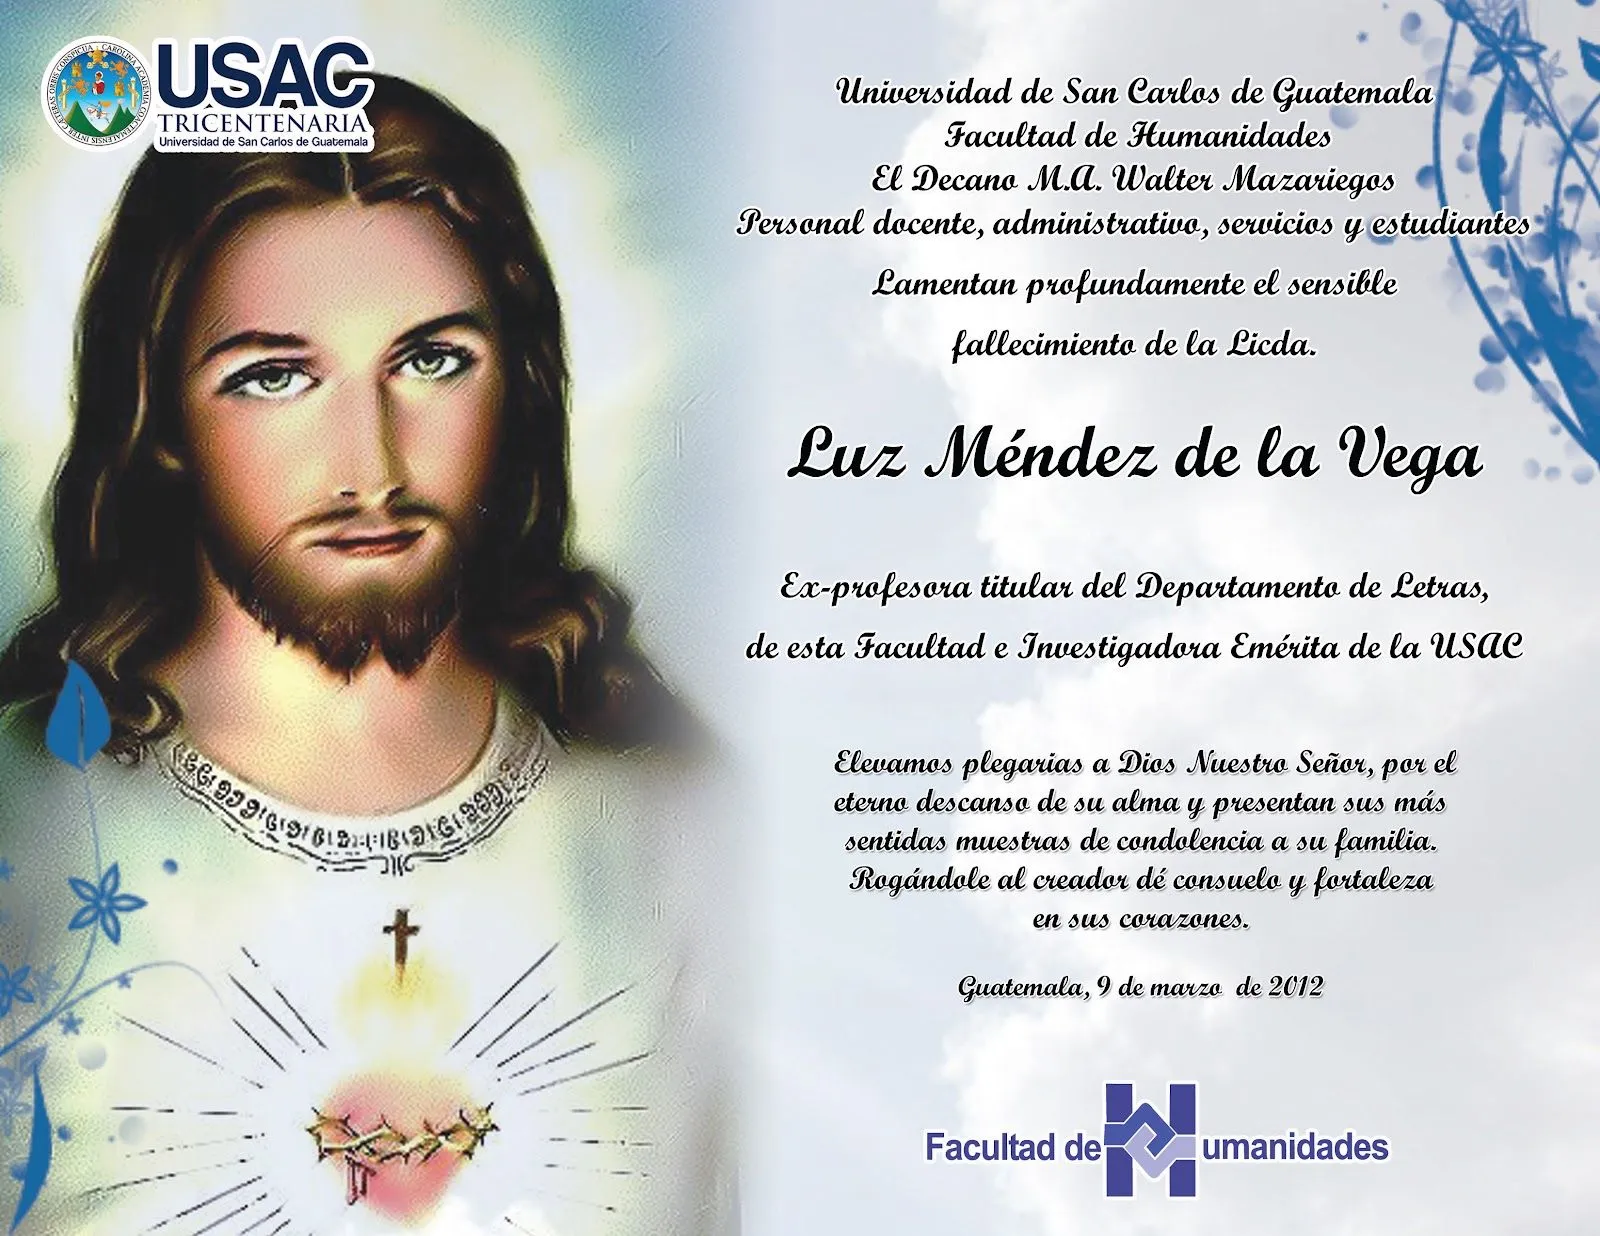 Facultad de Humanidades: Fallecimiento de Licda. Luz Méndez de la Vega